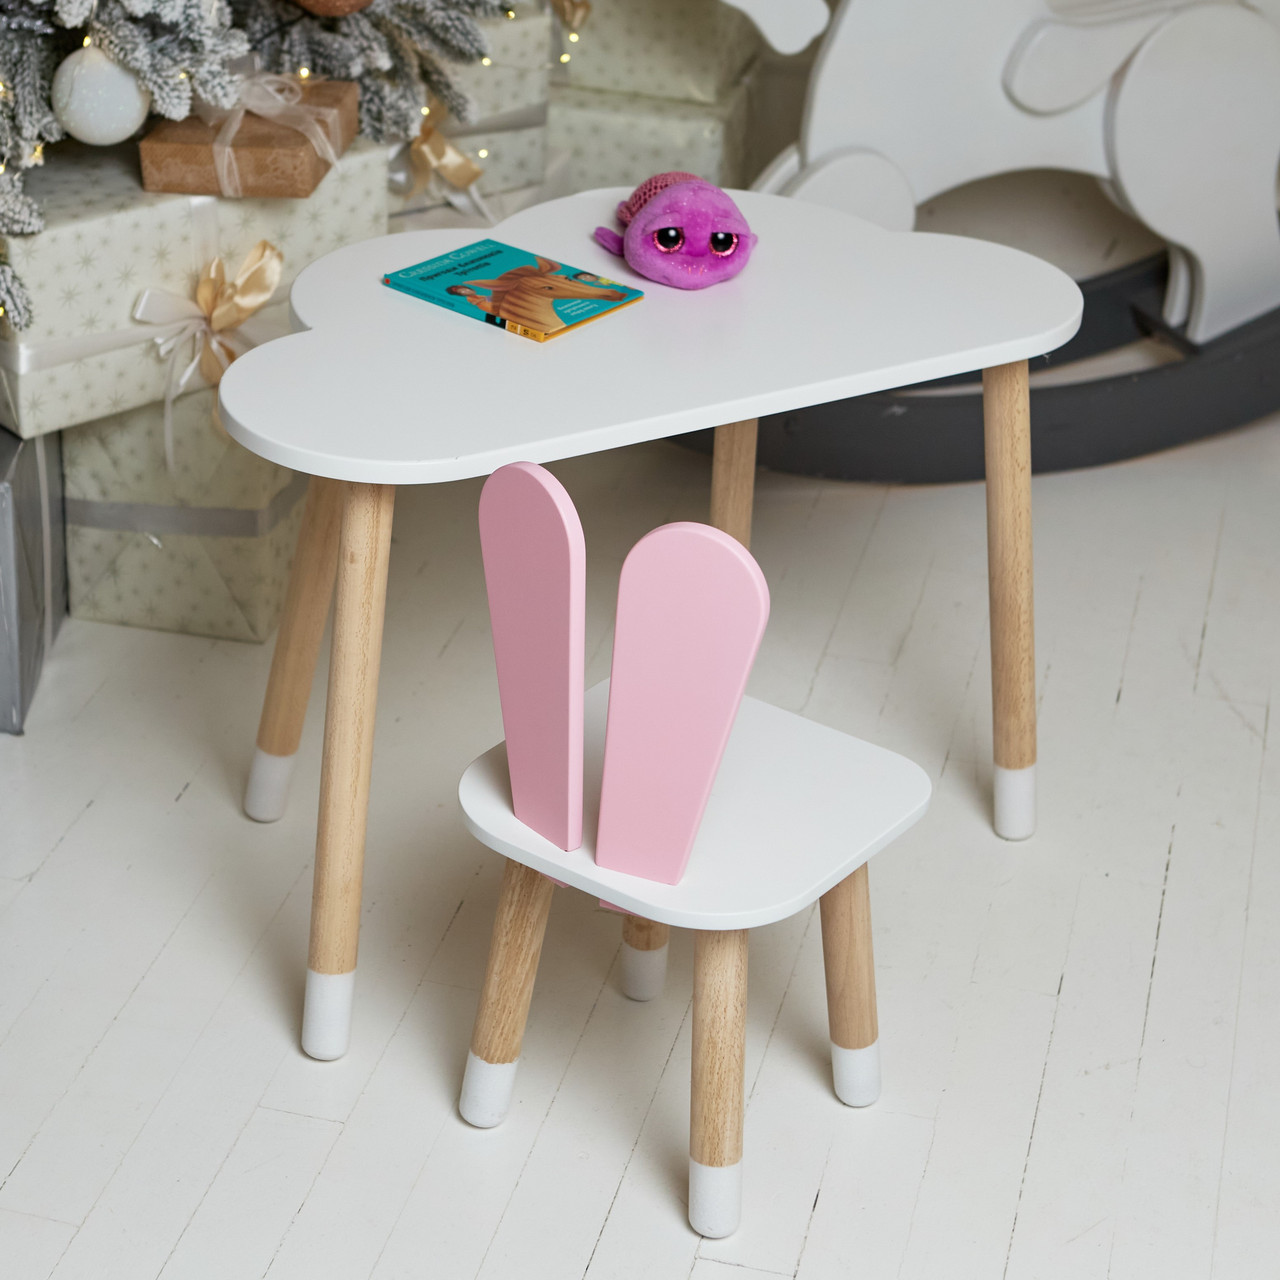 Дитячий столик хмаринка і стільчик вушка зайчика рожеві. Столик для ігор, занять, їжі